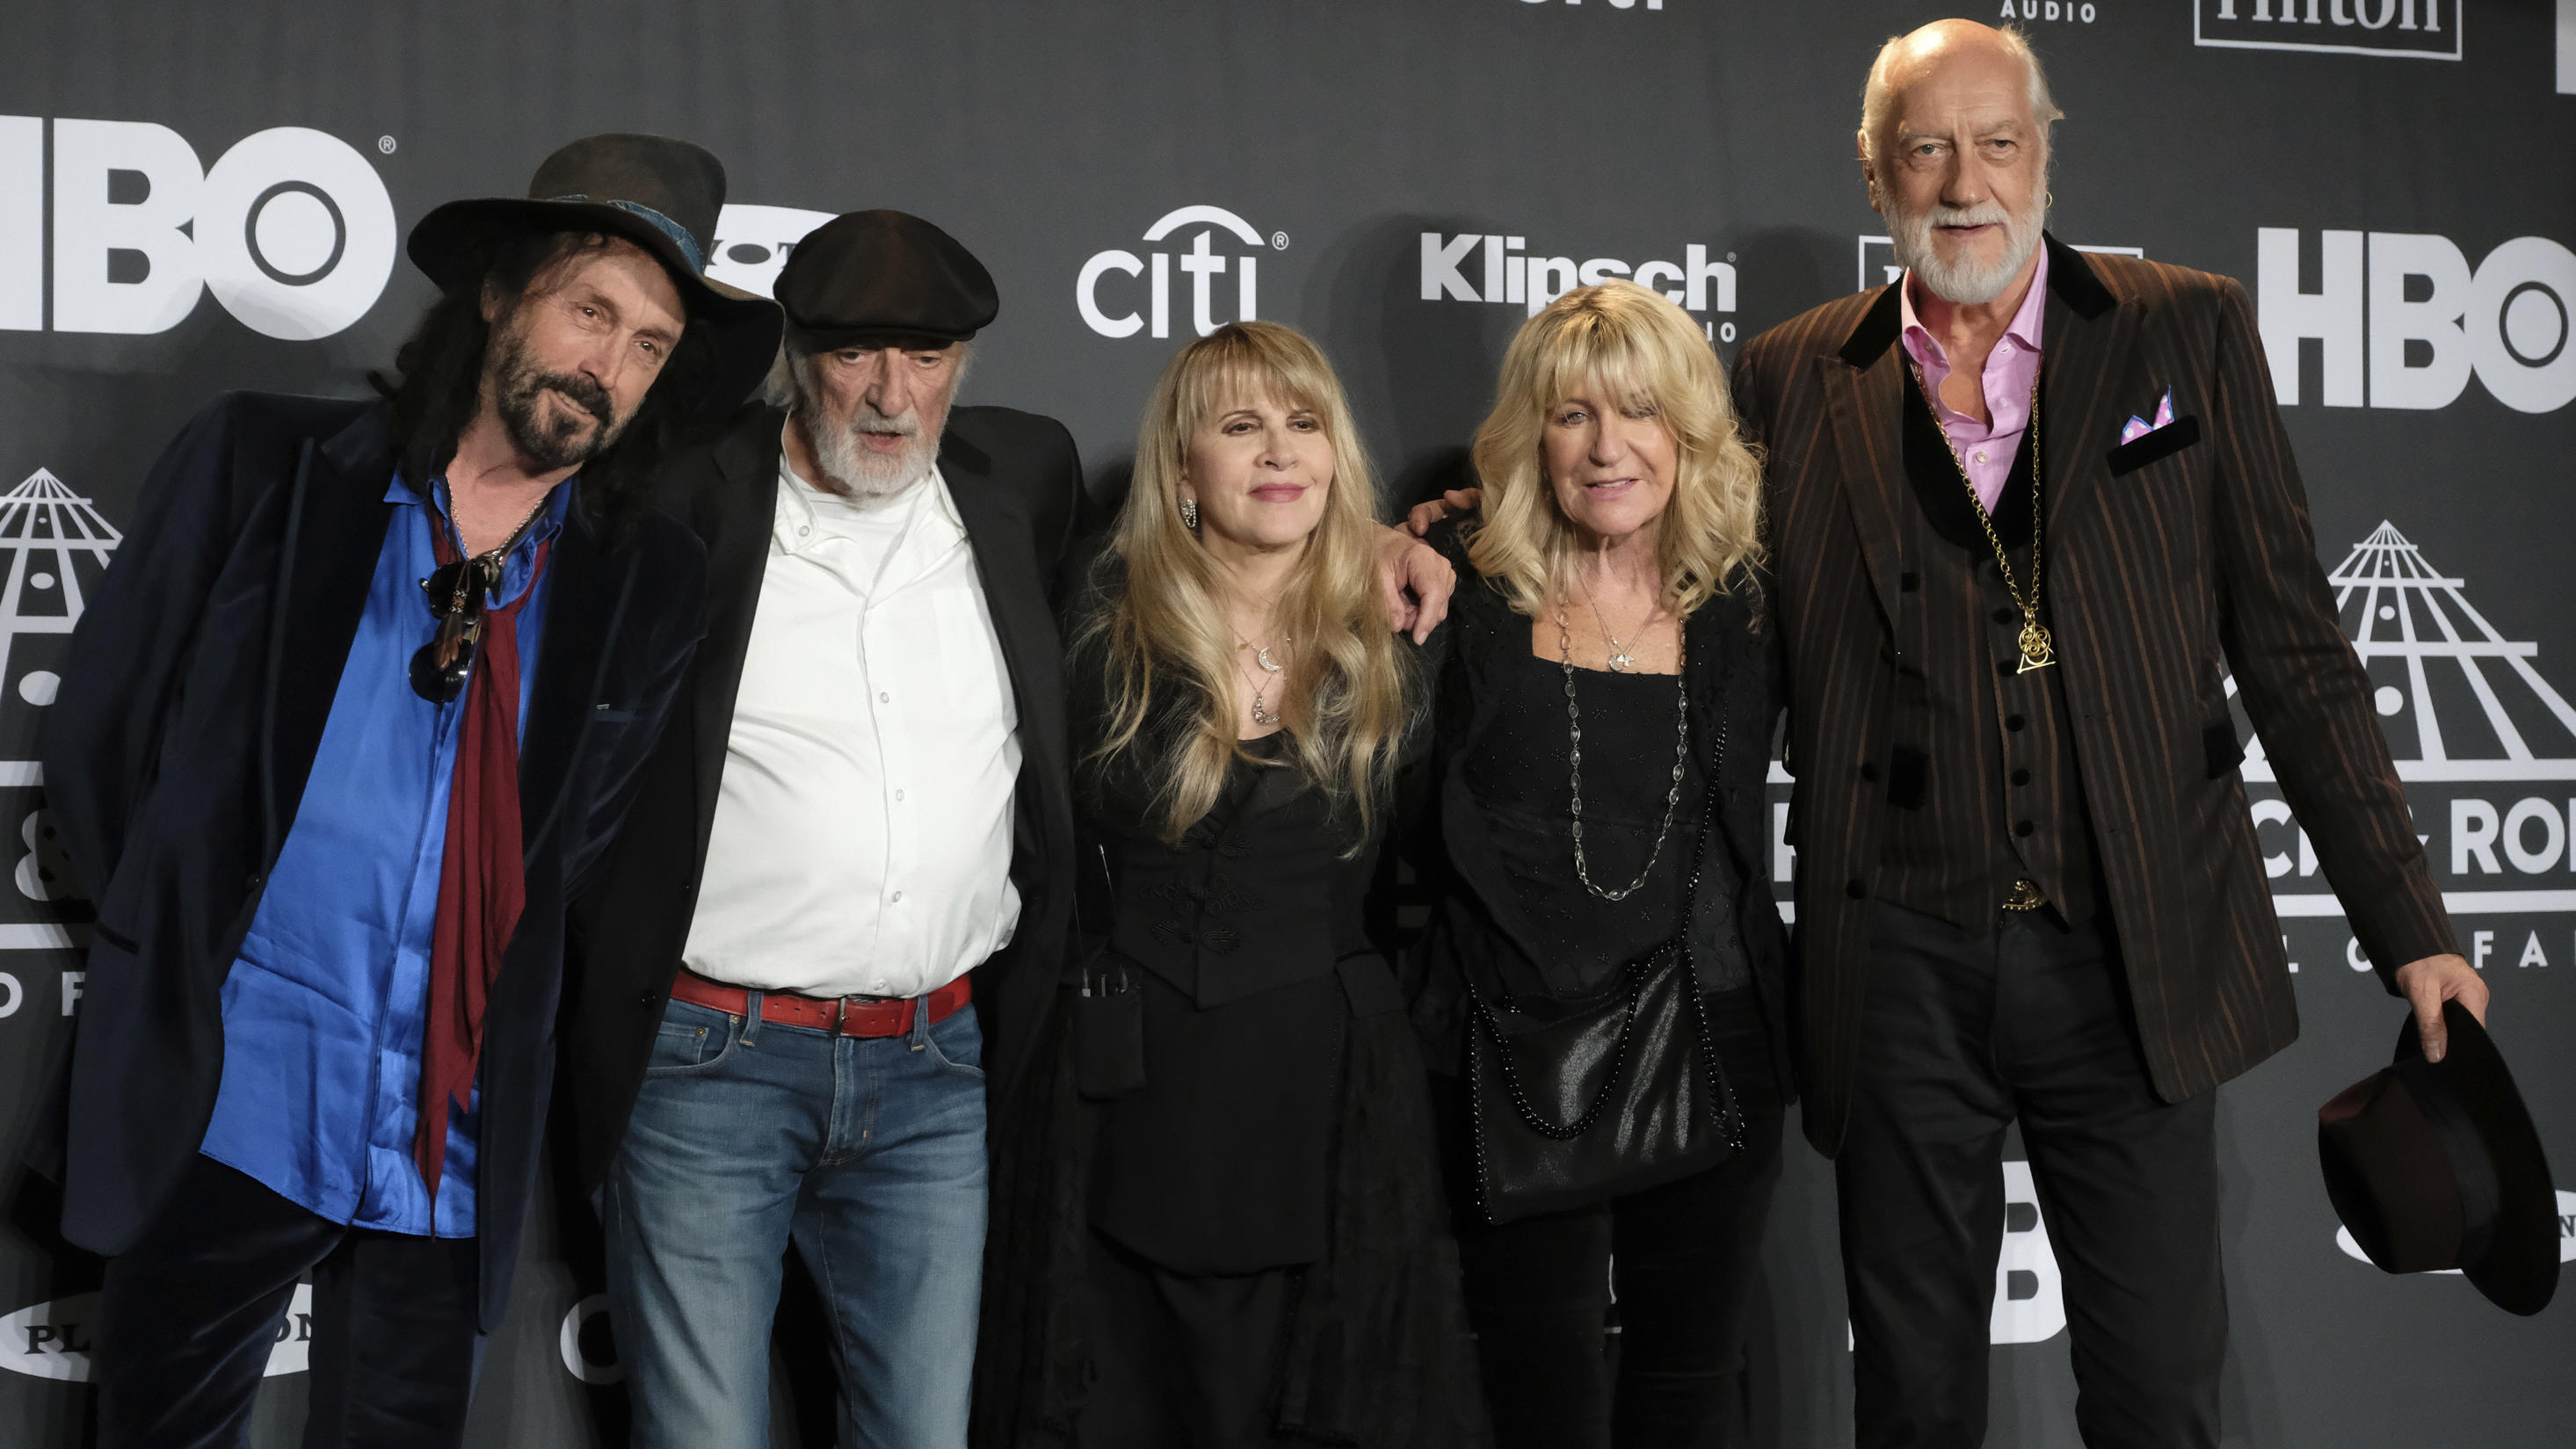 "Fleetwood Mac" nehmen Abschied von Keyboarderin Christine McVie. V.l.n.r. Stevie Nicks, Mike Campbell, John McVie, Christine McVie and Mick Fleetwood.